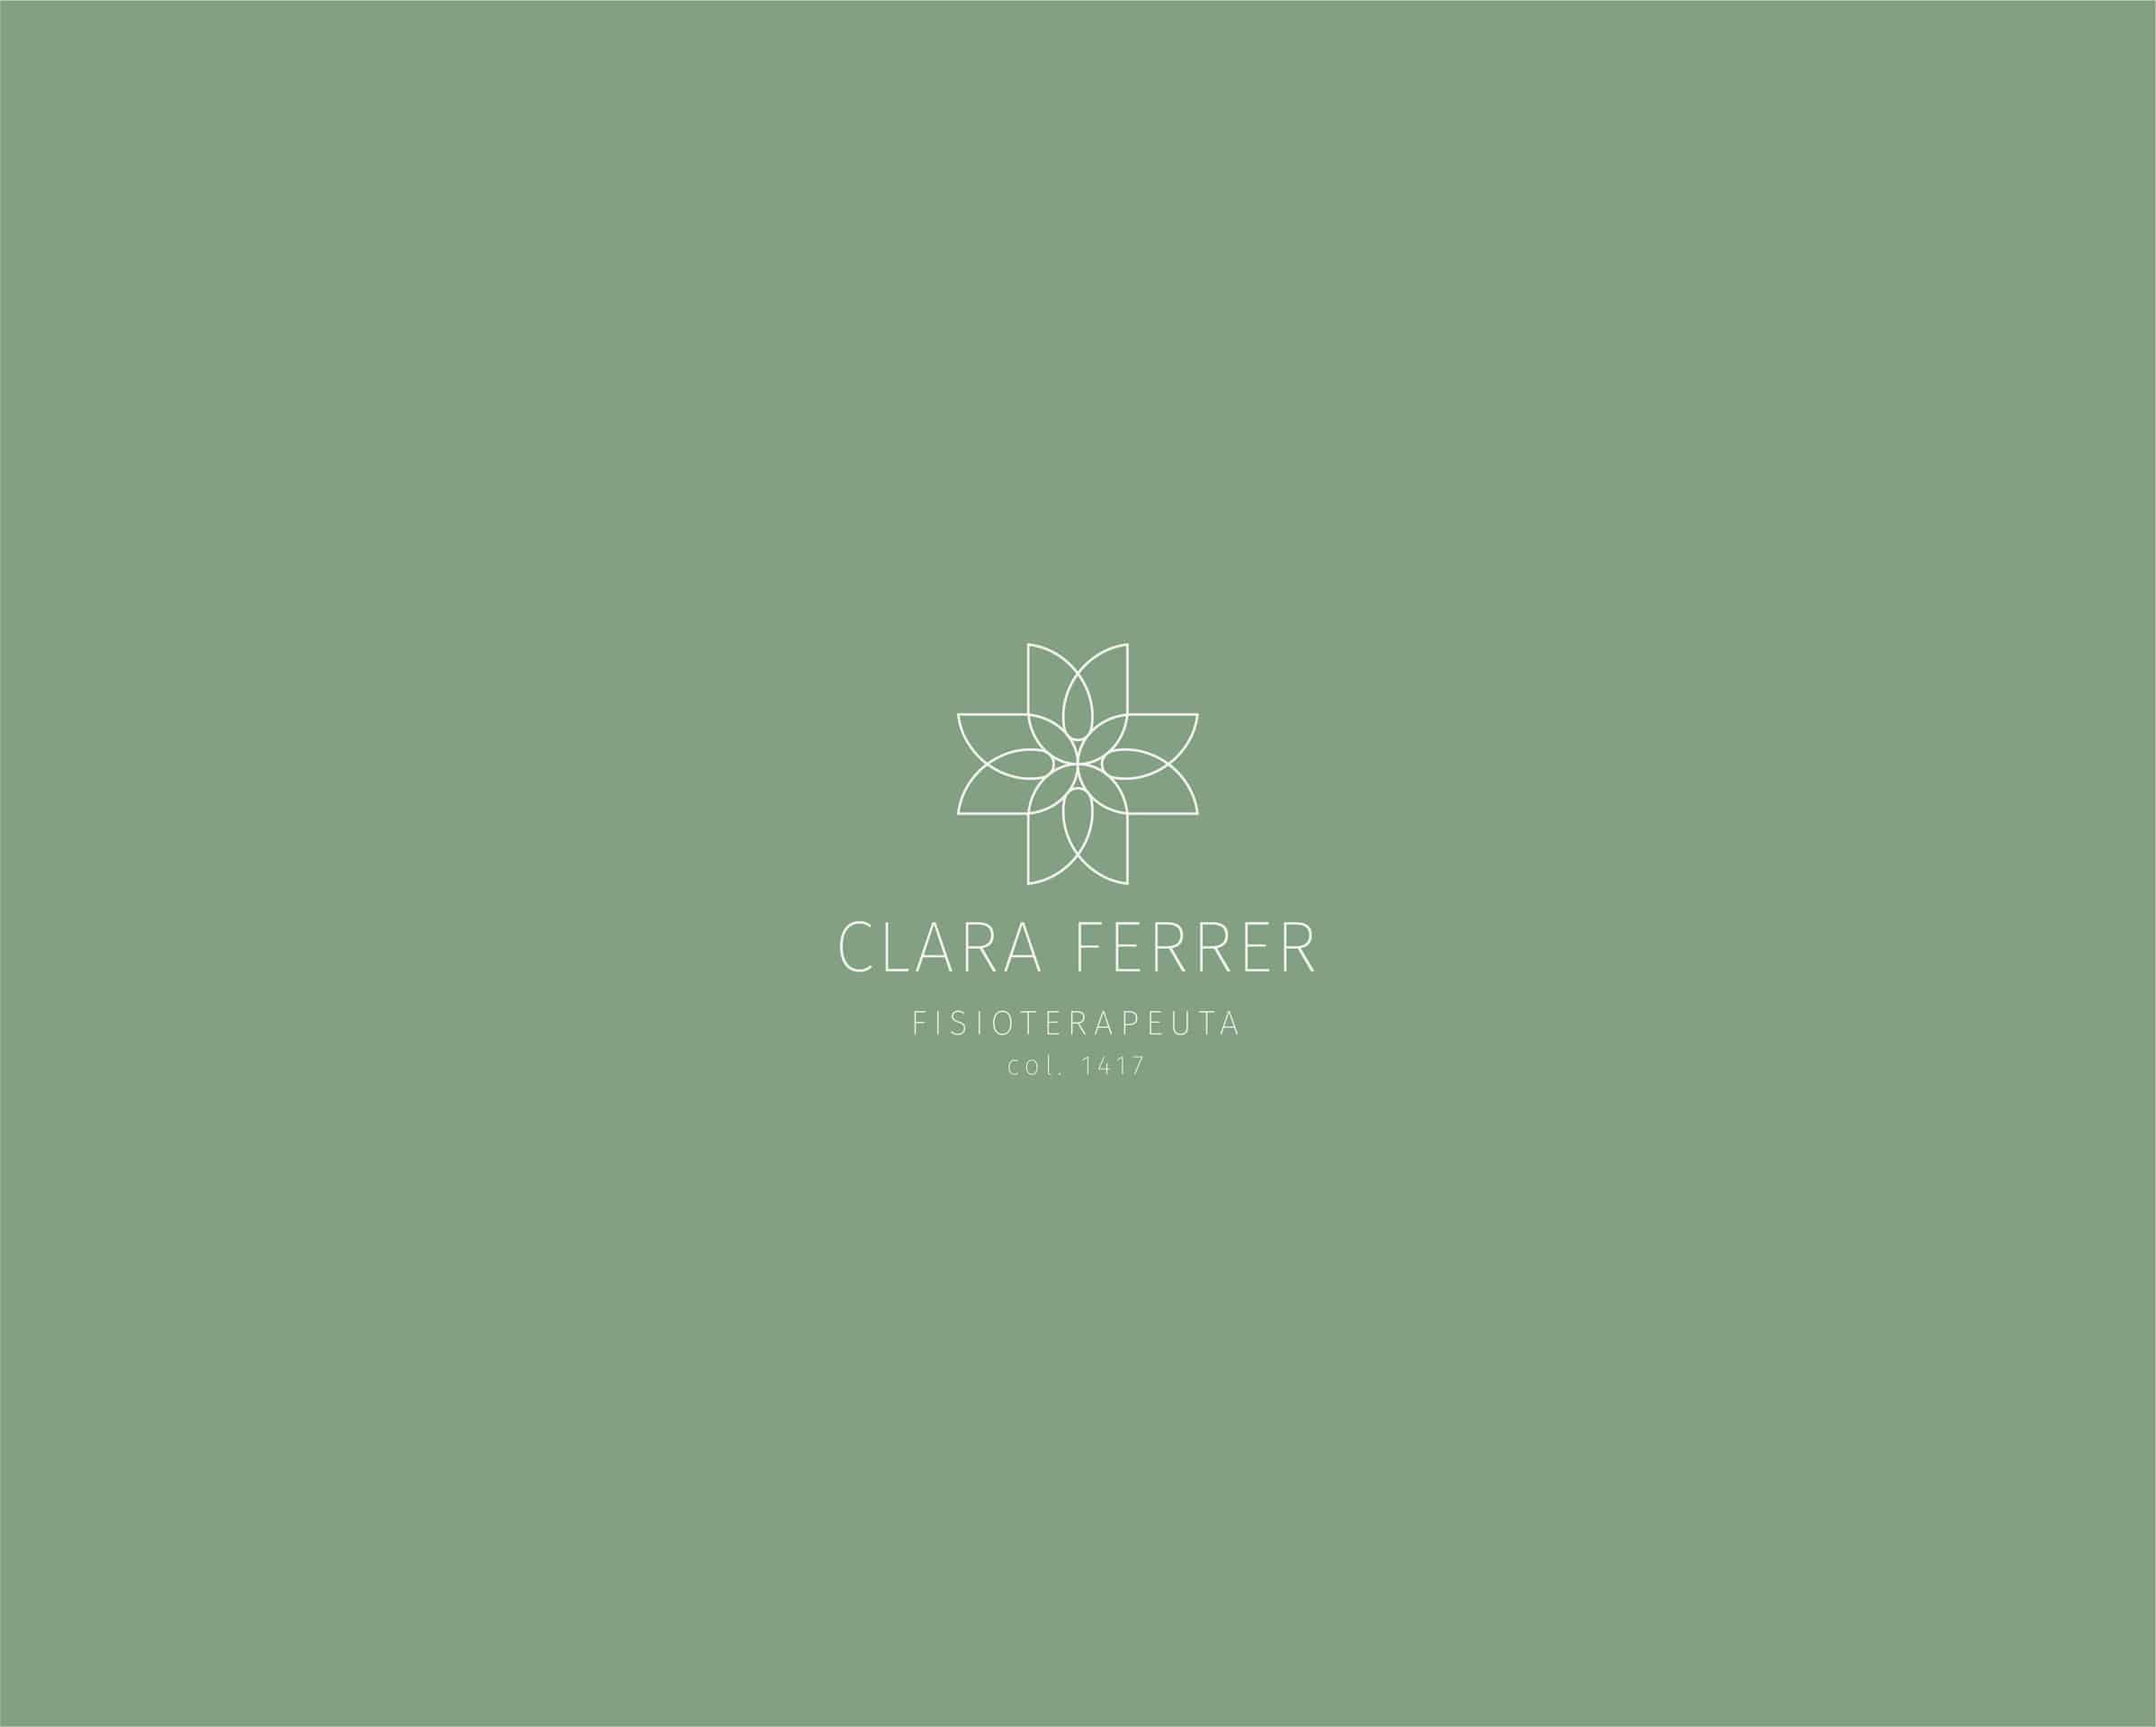 Clara Ferrer - Brand Identity